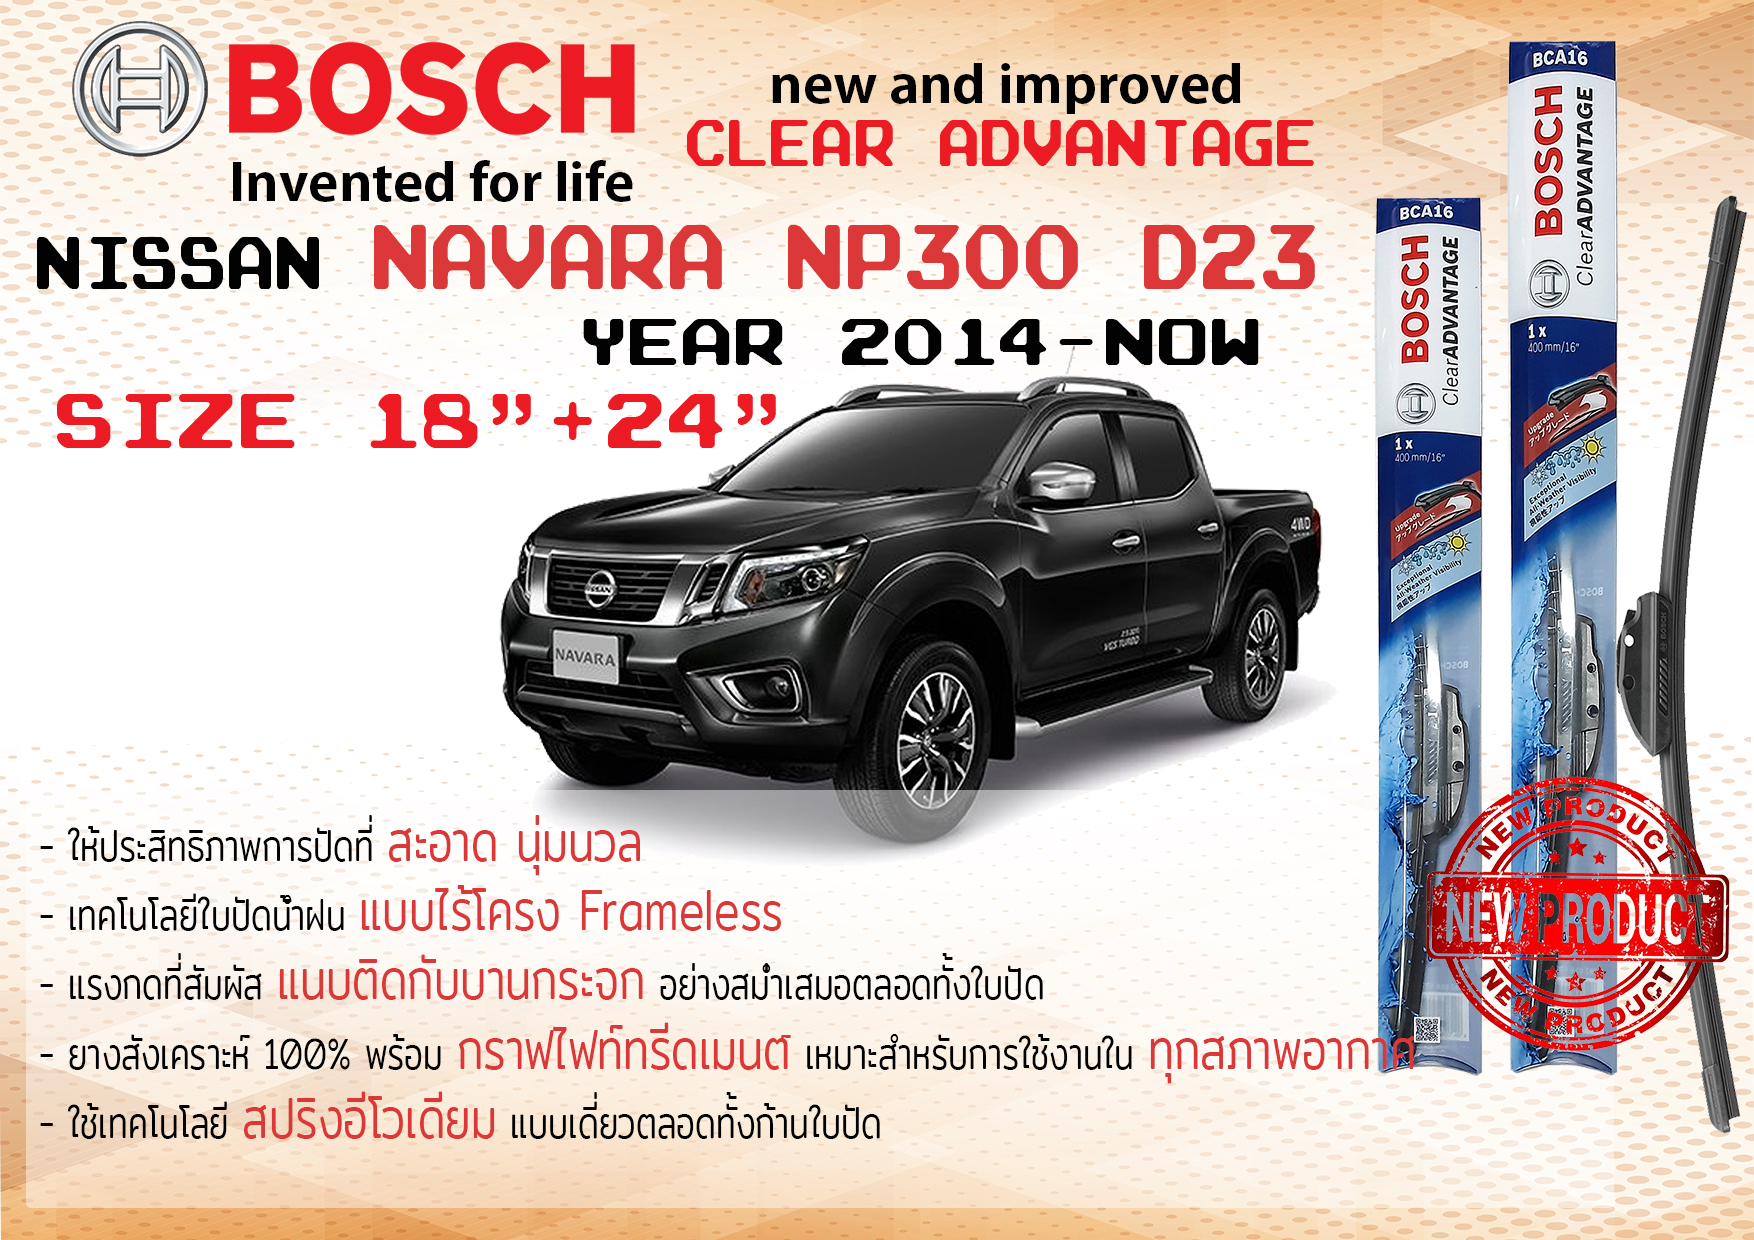 ใบปัดน้ำฝน คู่หน้า Bosch Clear Advantage frameless ก้านอ่อน ขนาด 18”+24” สำหรับรถ Nissan NAVARA D23 ปี 2014-2020 ปี 14,15,16,17,18,19,20 นิสสัน นาวาร่า นาวารา ทนแสง UV